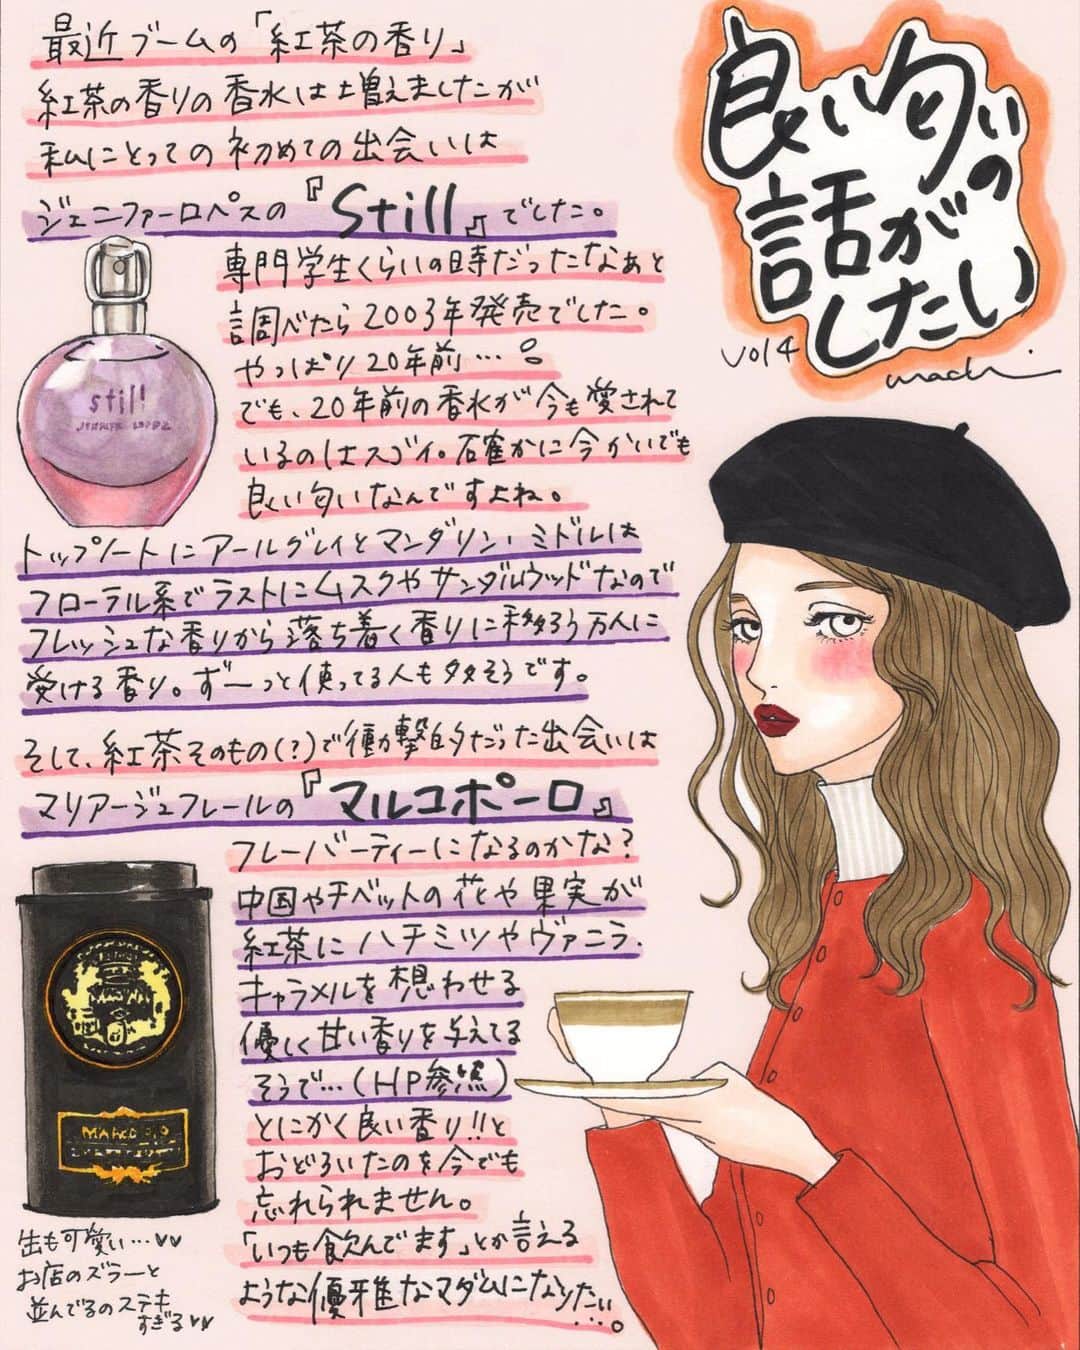 machiのインスタグラム：「『良い匂いの話がしたい』vol.4  こんばんは。 今回は「紅茶のかおり」のお話です。 紅茶の香りの香水「Still」と香りが大好きすぎる紅茶「マルコポーロ」について。  そして今回から1枚絵スタイルに変えました。漫画も楽しいんだけど「やっぱり‼︎ただ可愛いだけの女の子の絵が‼︎描きたいんやっっ‼︎‼︎」という欲が止まらなく、熟考した結果、この形にしました。何ならもうすでに紅茶の話の漫画出来上がってましたし。でもボツ。こっちのが可愛い。 これからもブラッシュアップしながら可愛い‼︎ってなってもらえるものを描いていきたいなと思いますので、良かったら読んだり見たりしてやってくださいな〜。 ではでは、良い夜を。  #良い匂いの話がしたい」